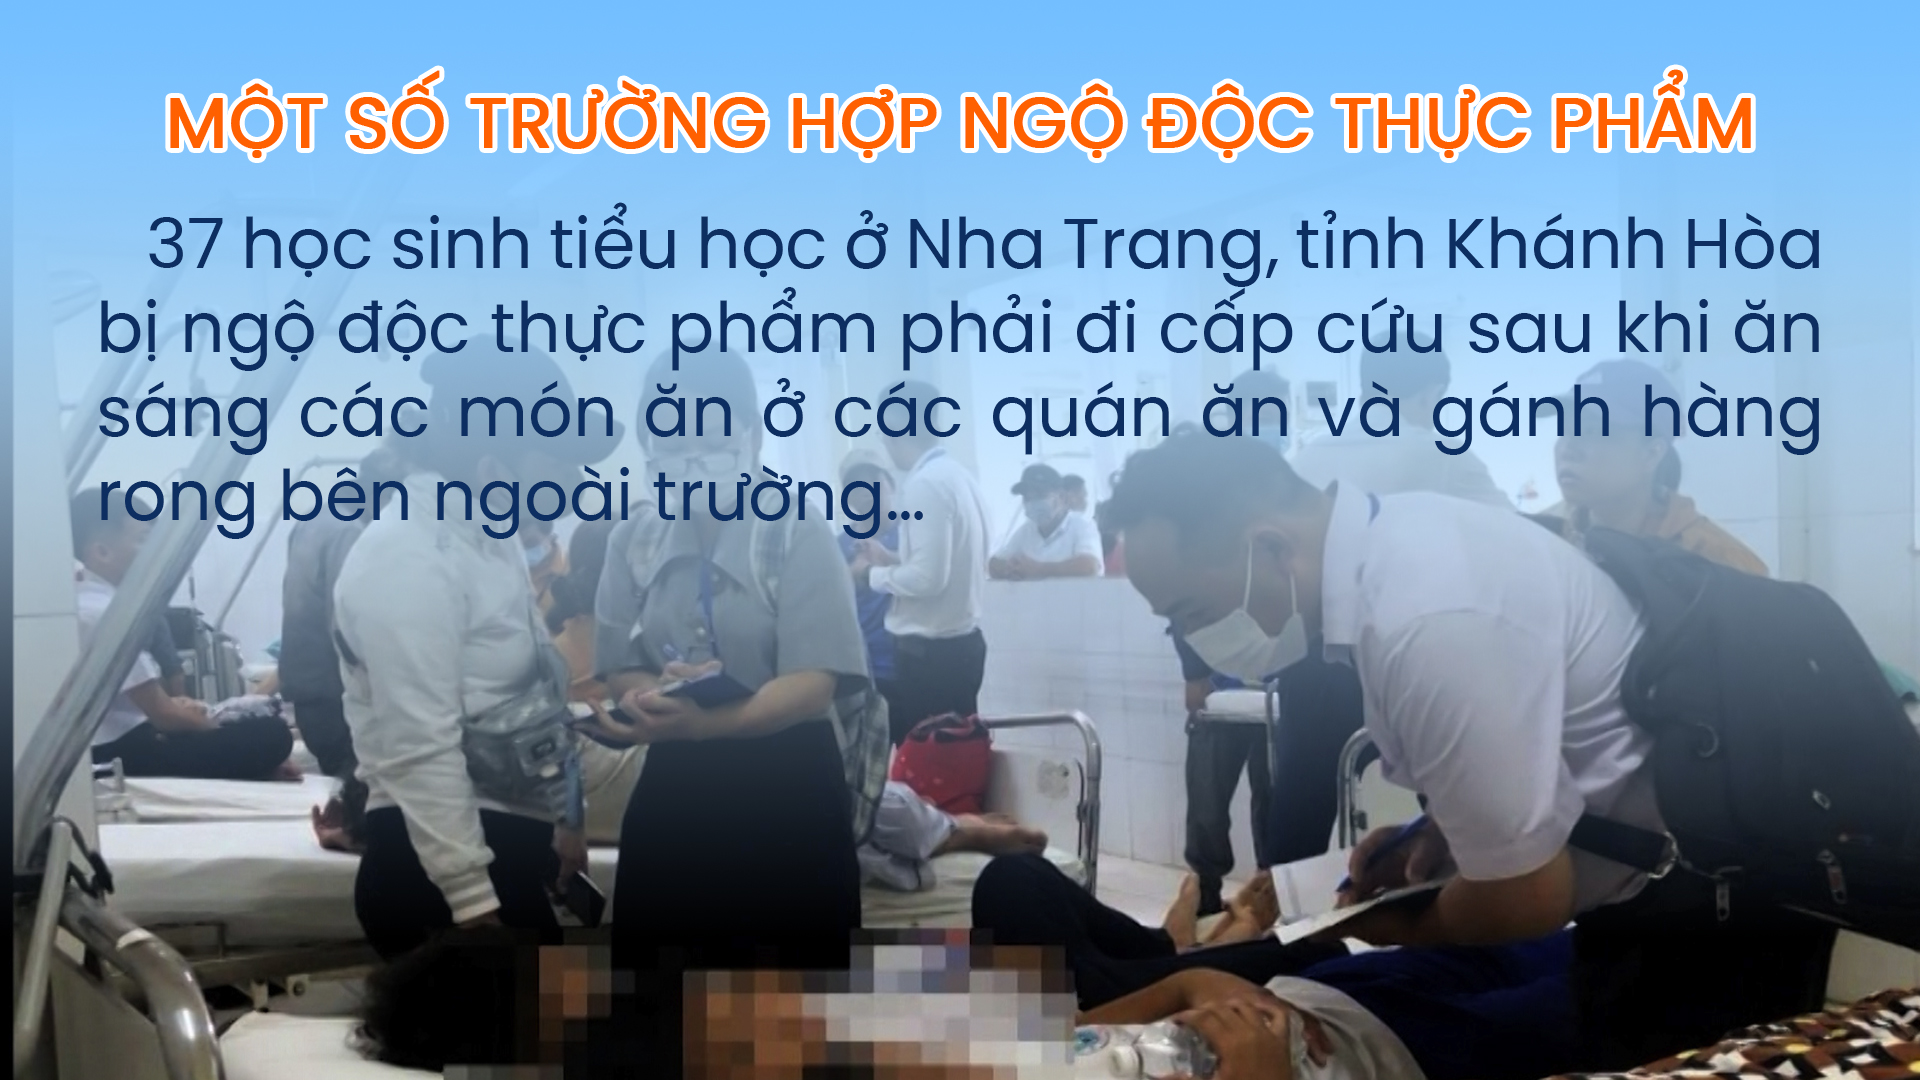 học sinh tiểu học Nha Trang bị ngộ độc thực phẩm